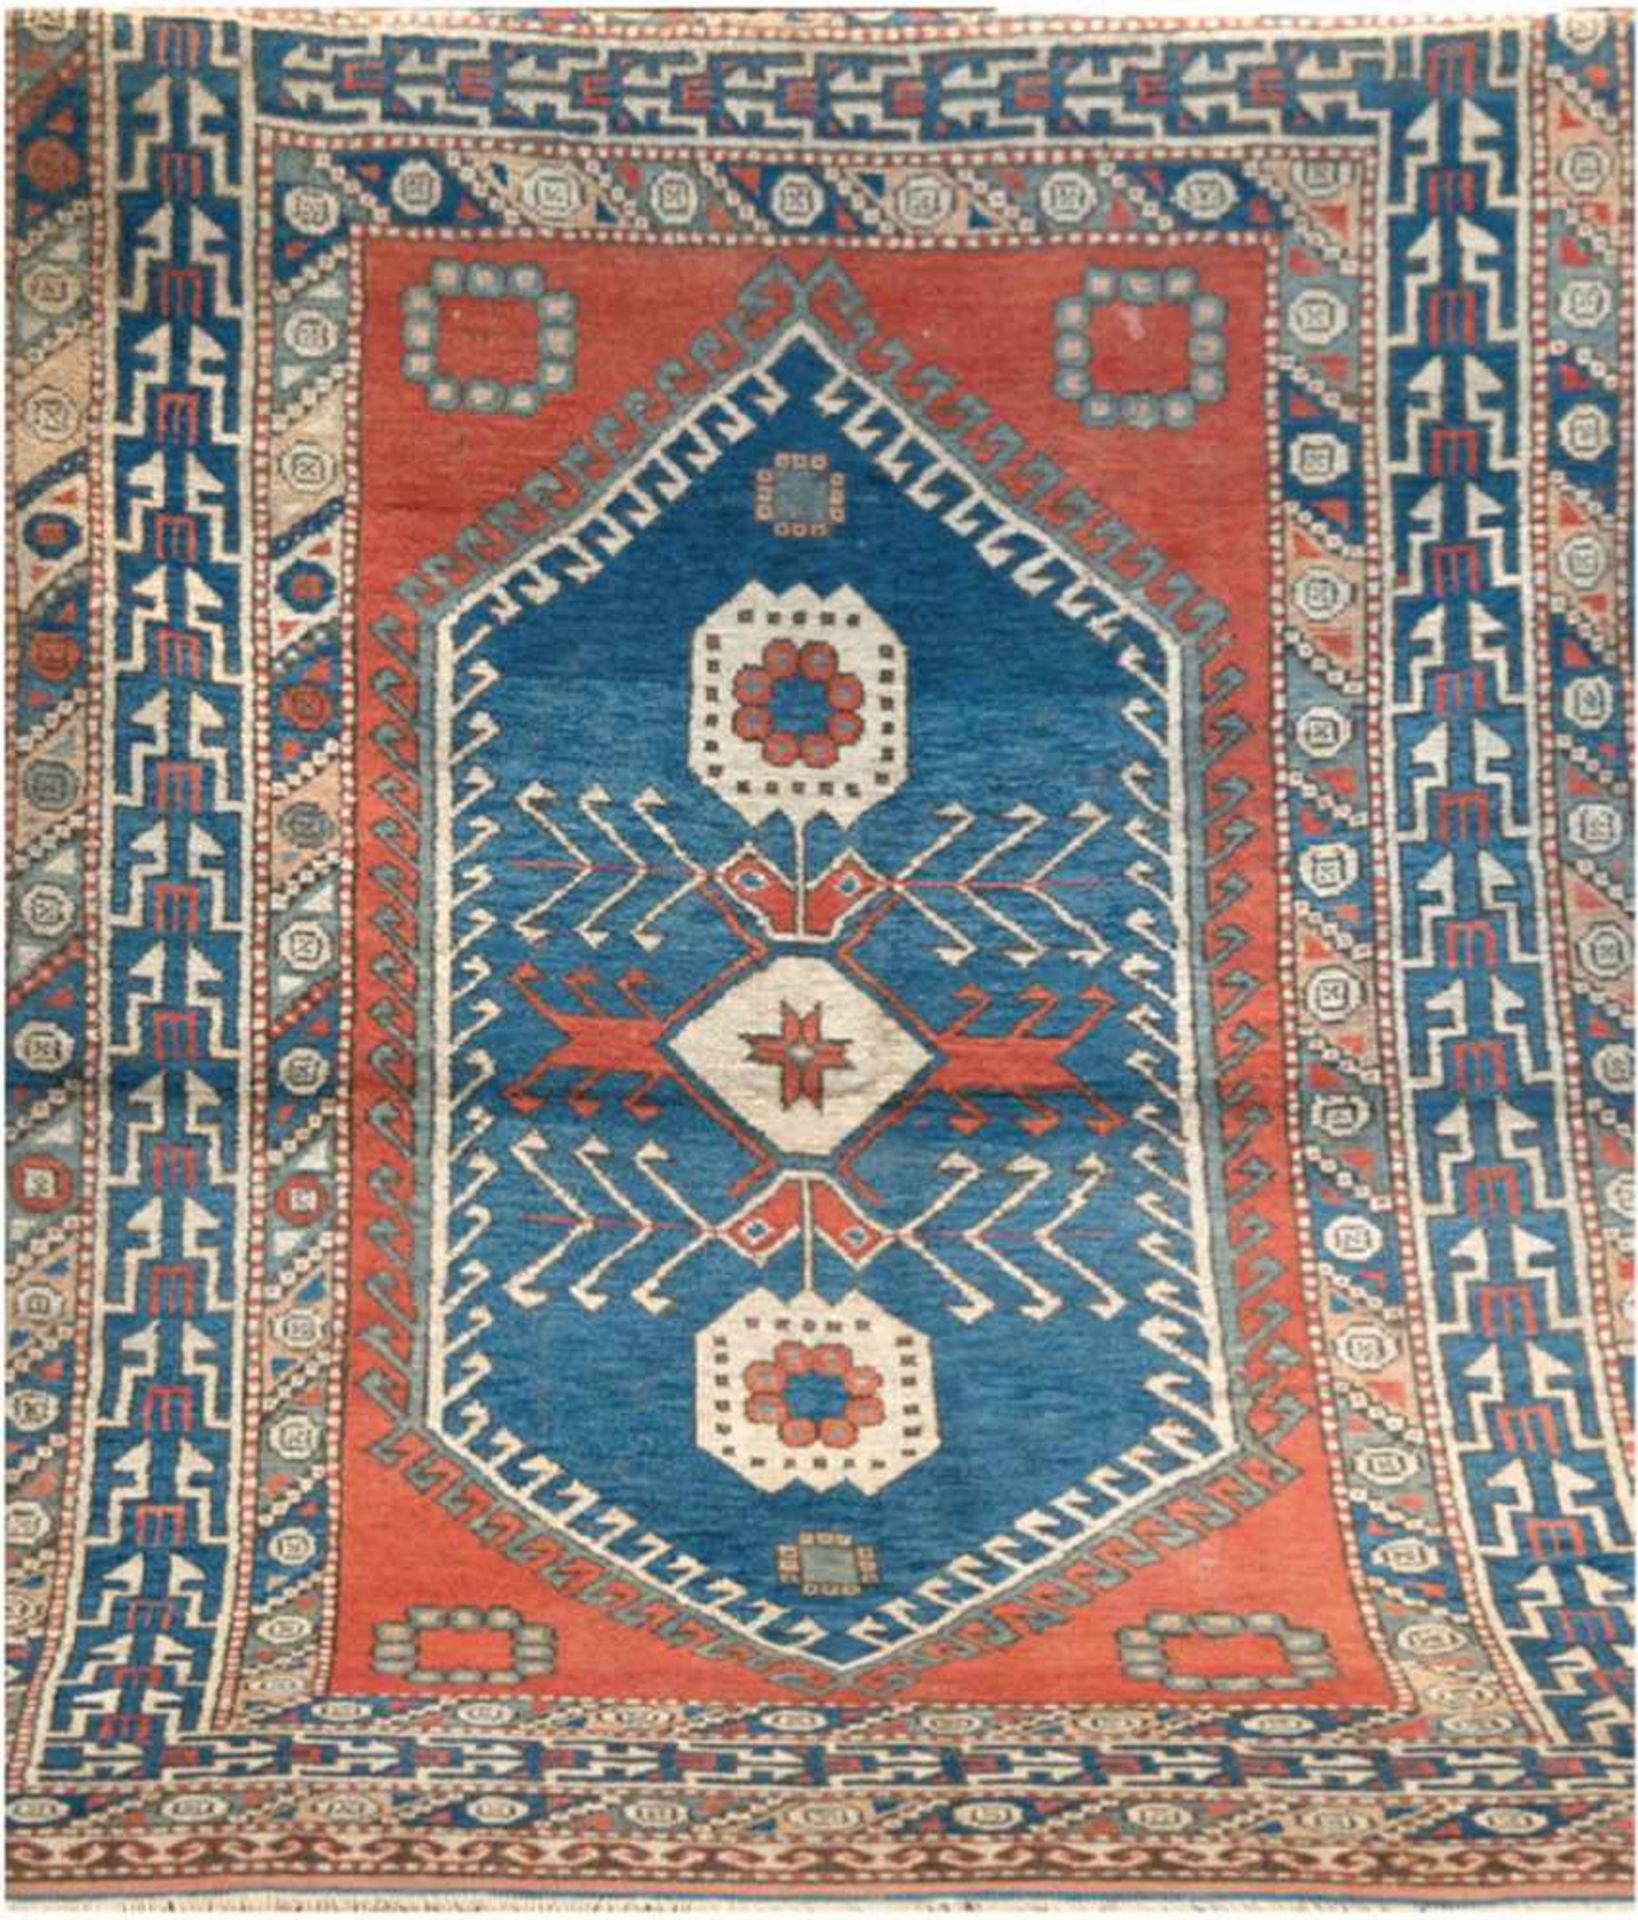 Teppich, rot-, blaugrundig mit Zentralmedaillon, Kanten und mittig belaufen,reinigungsbed.,